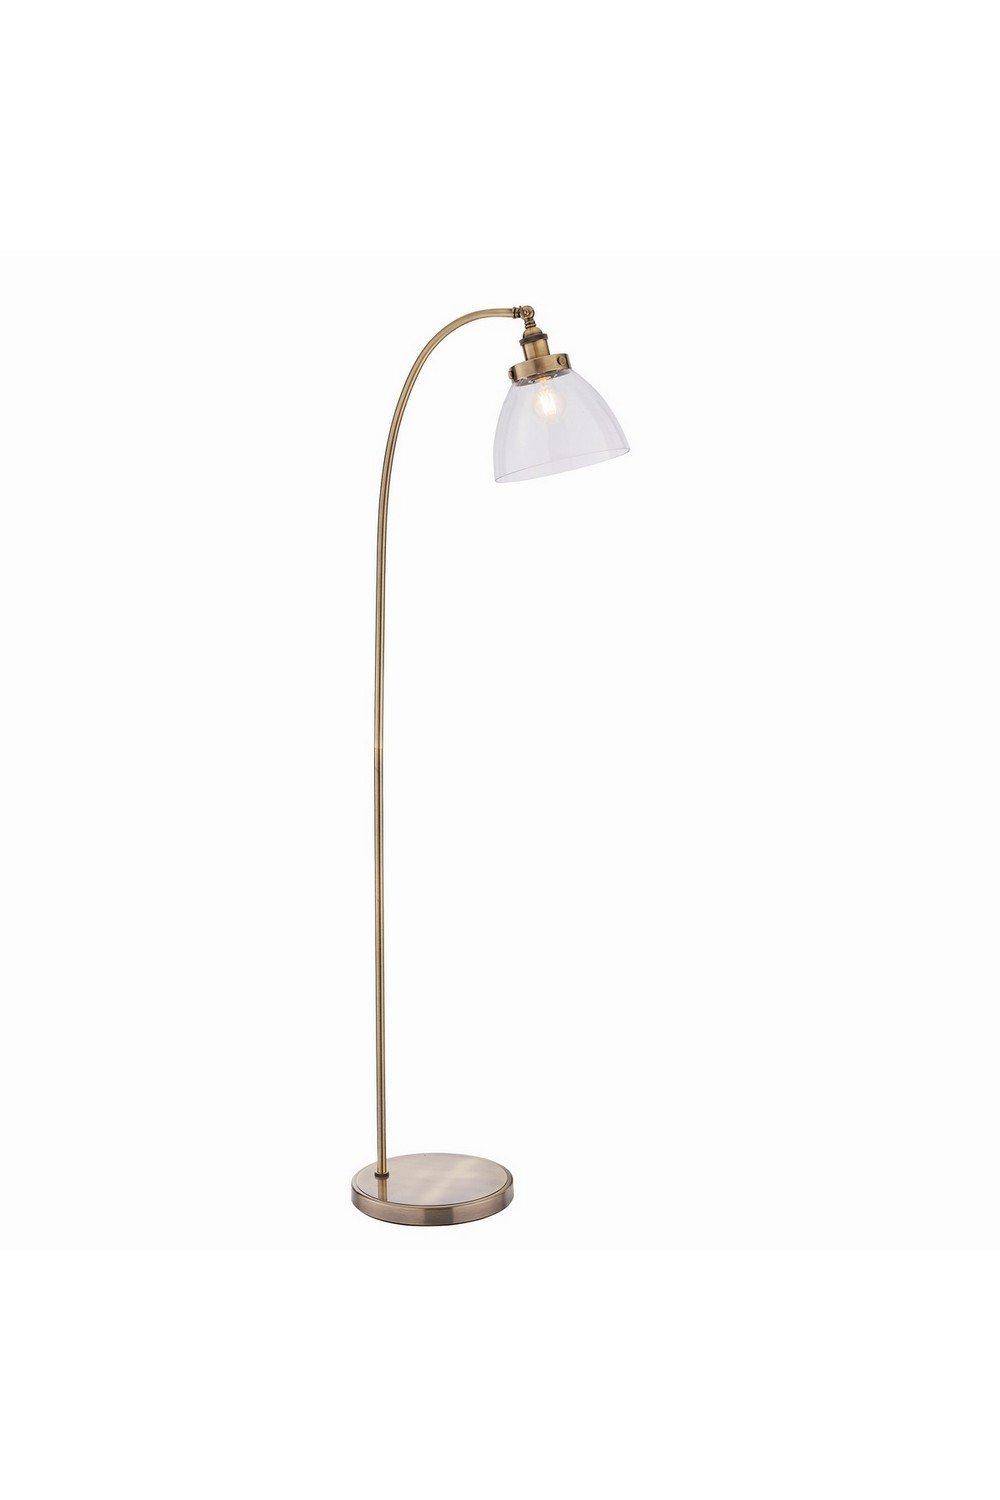 Hansen 1 Light Floor Lamp Antique Brass Glass E27